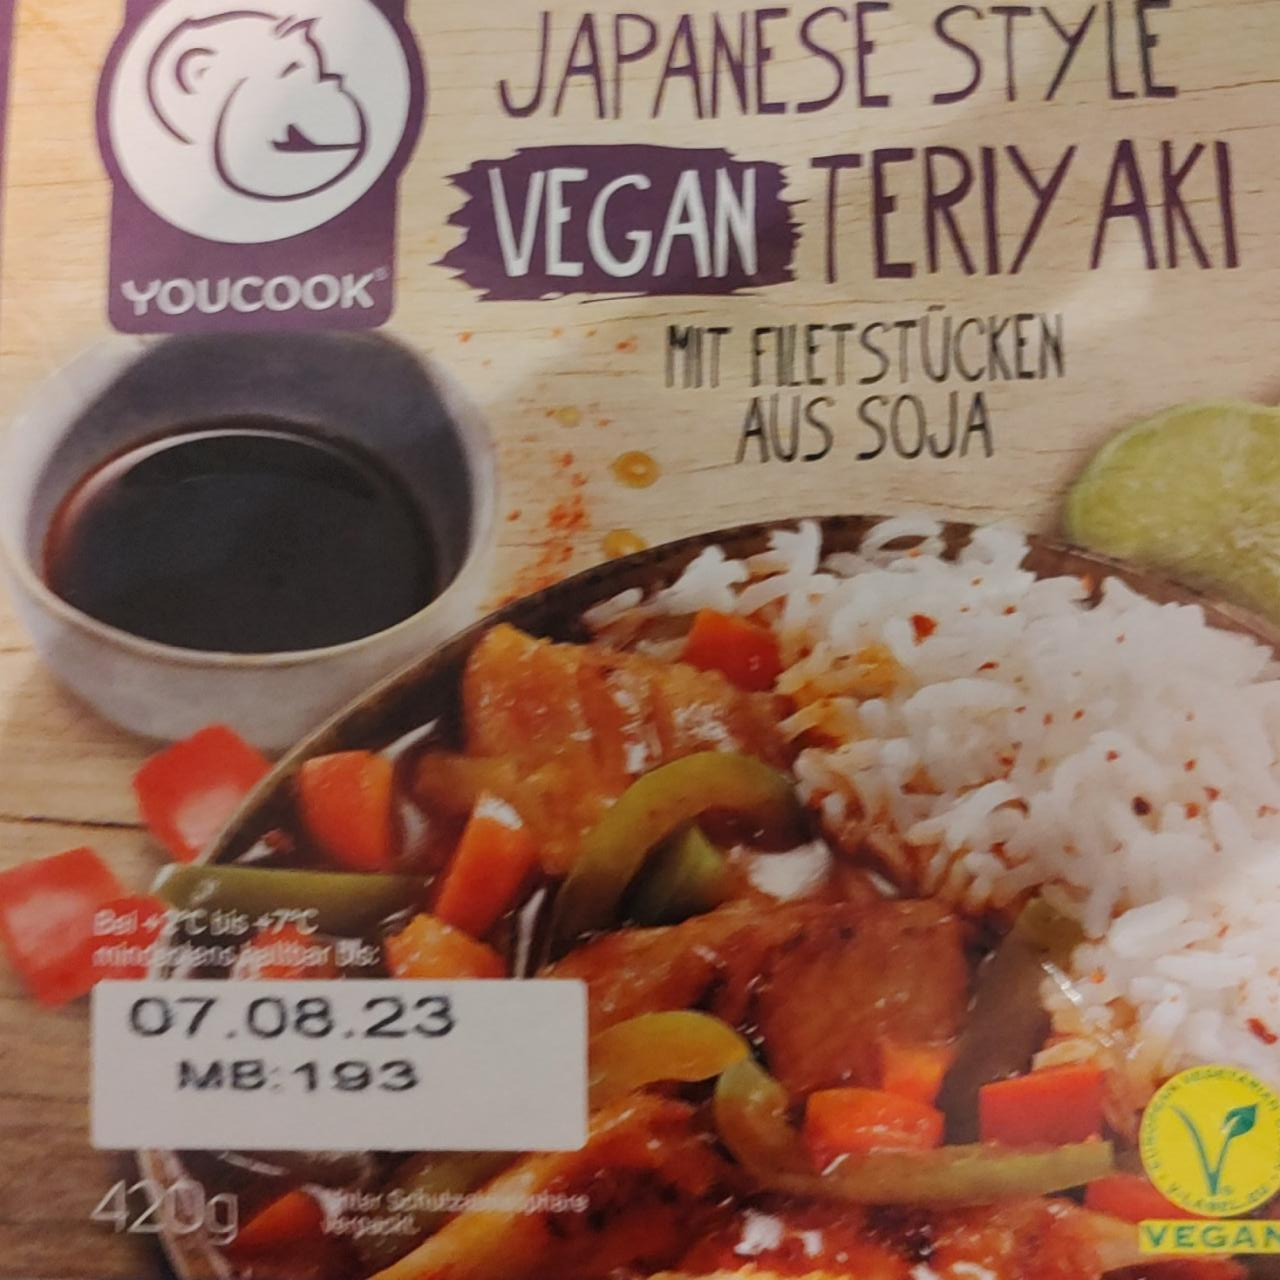 Fotografie - Japanese Style Vegan Teriyaki Youcook